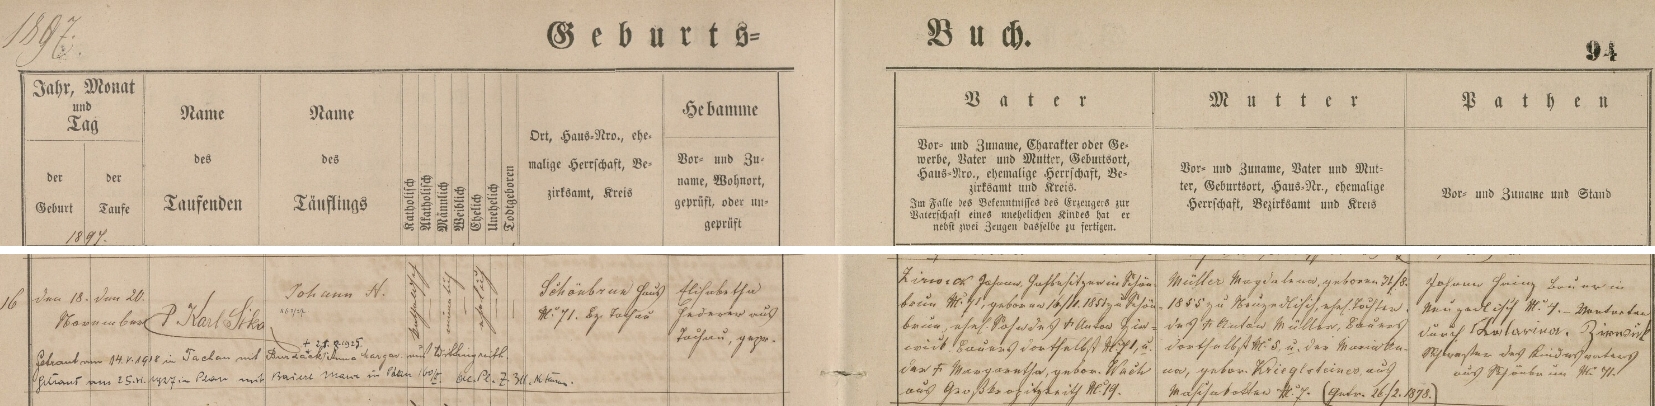 Záznam o jeho narození a křtu v tachovské matrice s přípisy o dvou svatbách